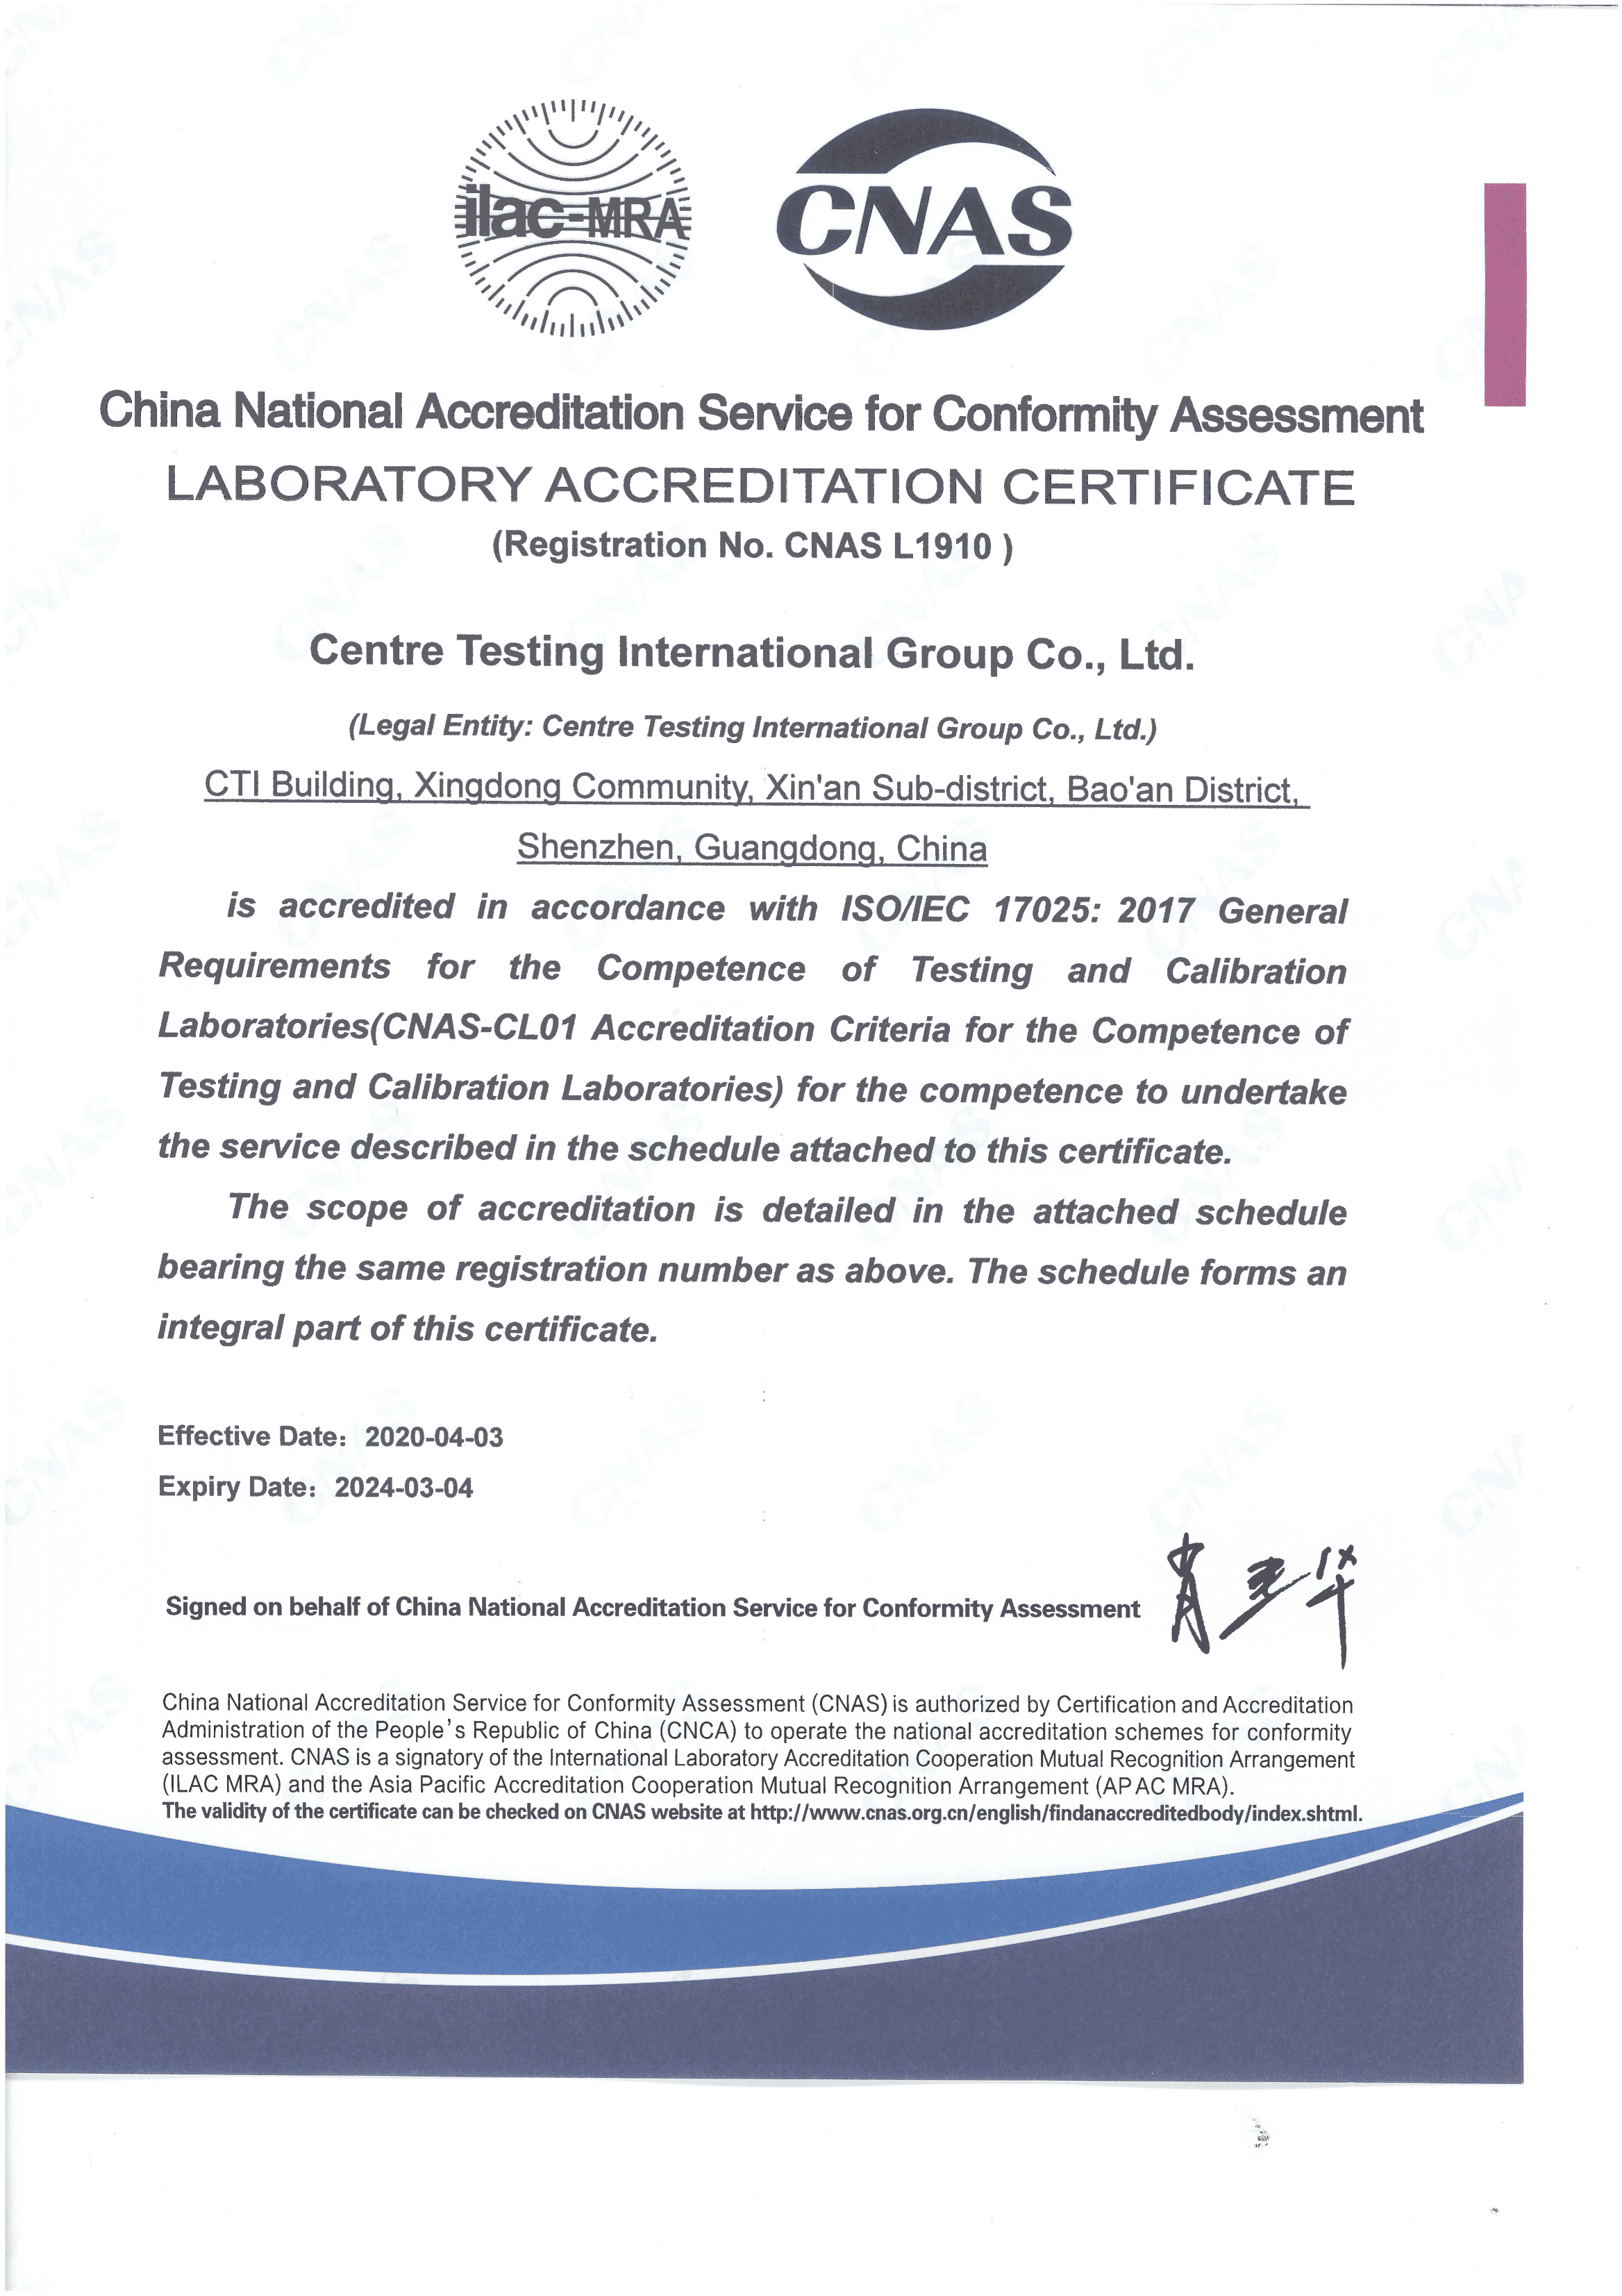 CNAS ISO/IEC 17025:2017